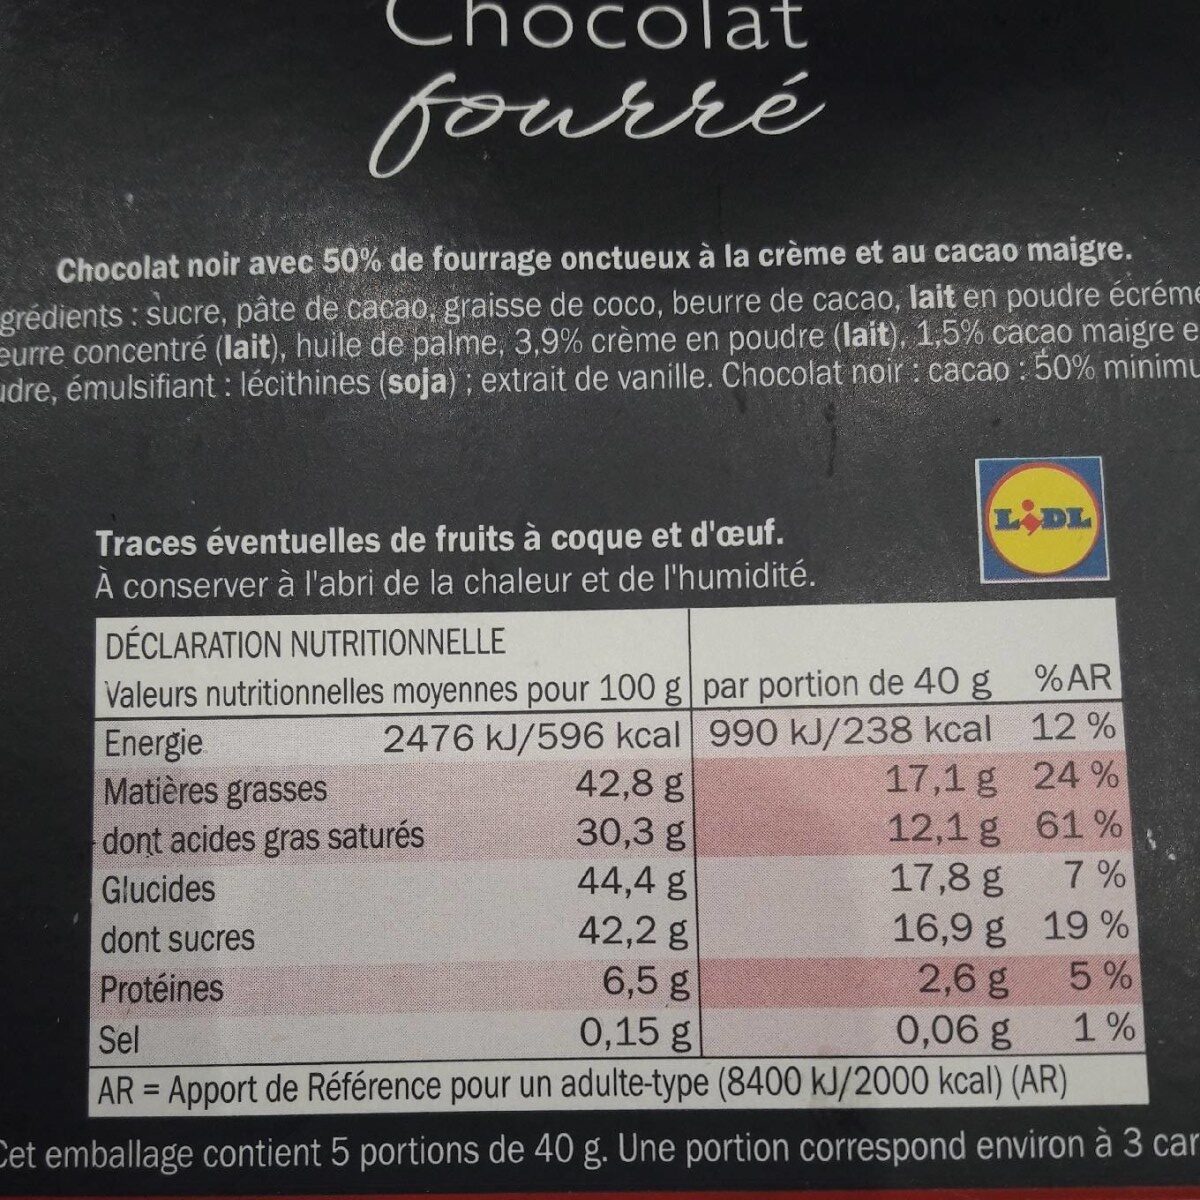 Chocolat fourré - crémeux cacao - Ingredients - fr